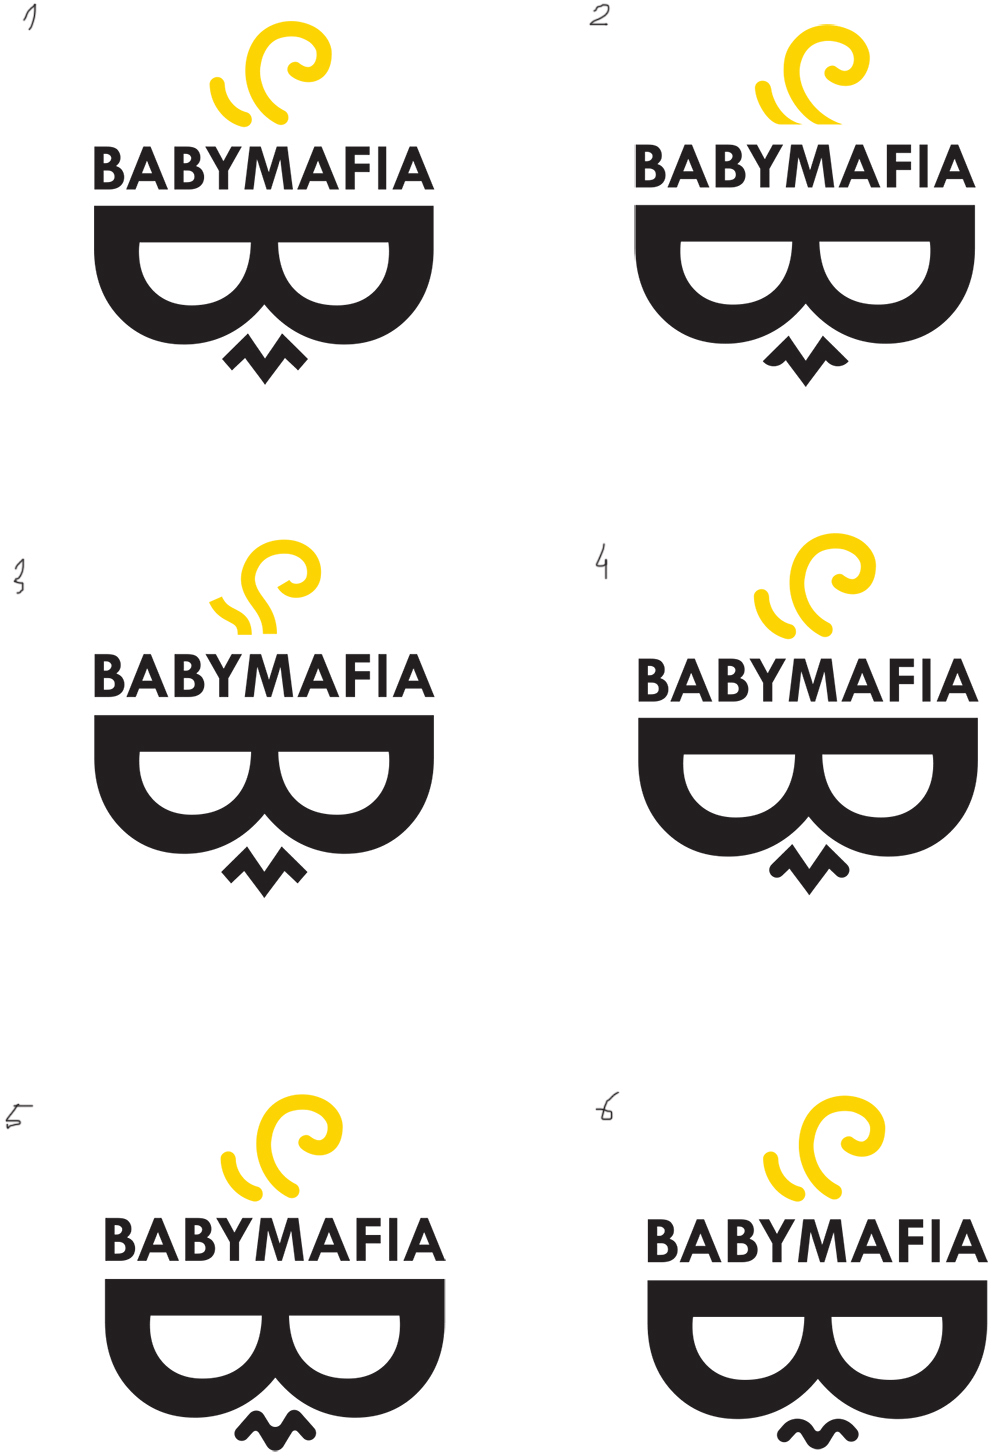 babymafia process 13